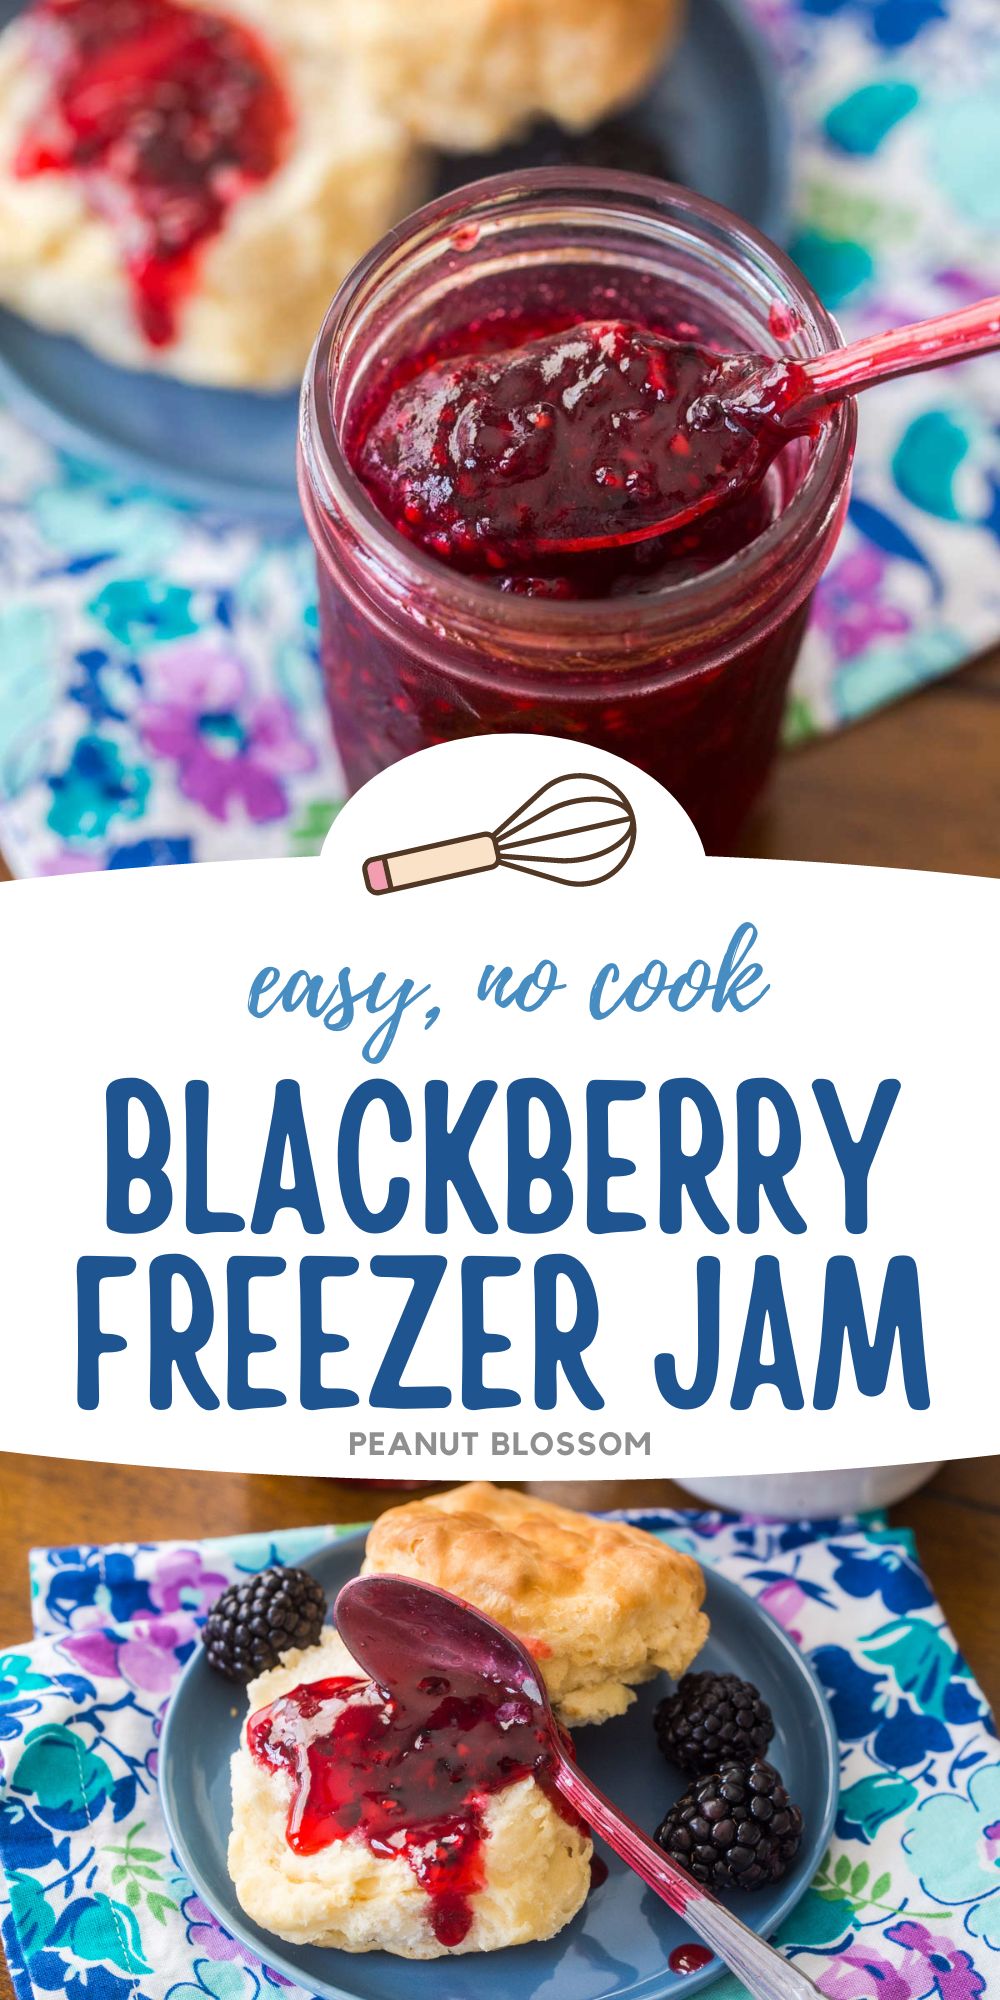 Best Freezer Jam Recipe - How to Make No-Cook Freezer Jam